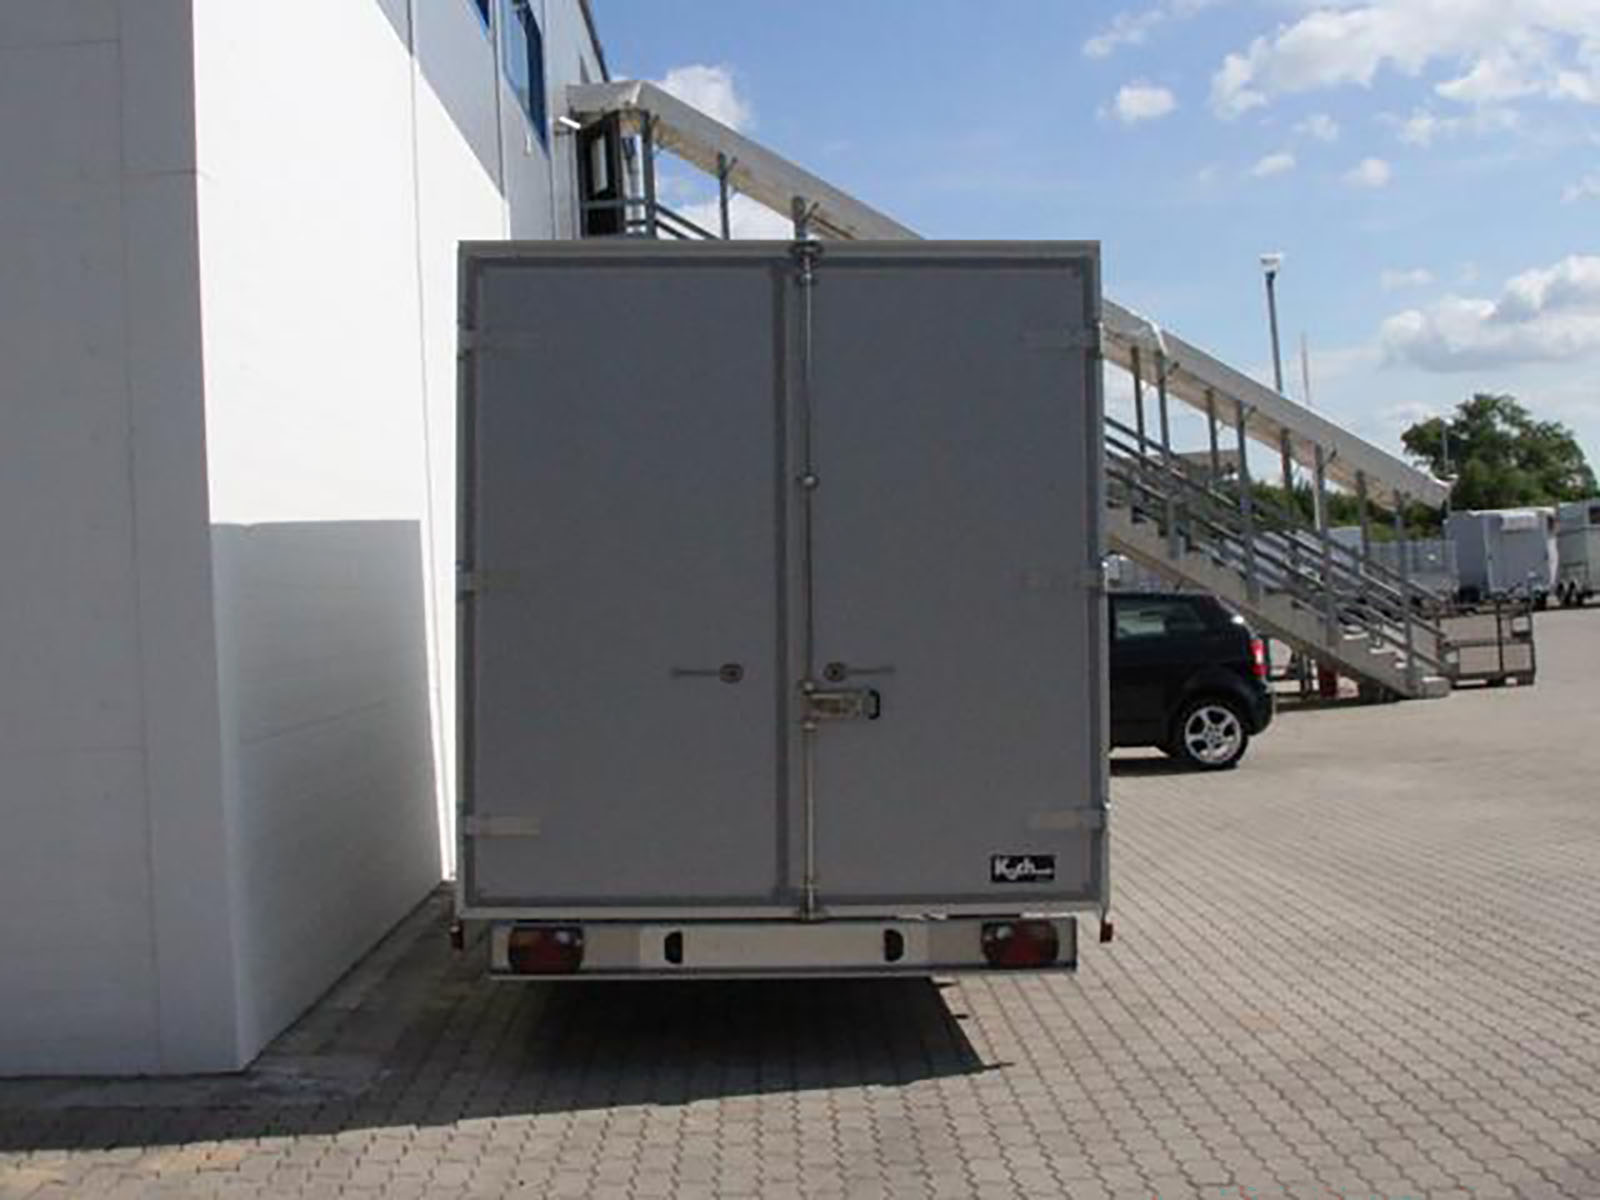 Sonstige-Koffer-Anhaenger-Unsinn-Kofferanhaenger-UK-204x426cm-Hoehe-210cm-3-0t_Ko0401SoUn_6aFtvkDcwajZSV.jpg